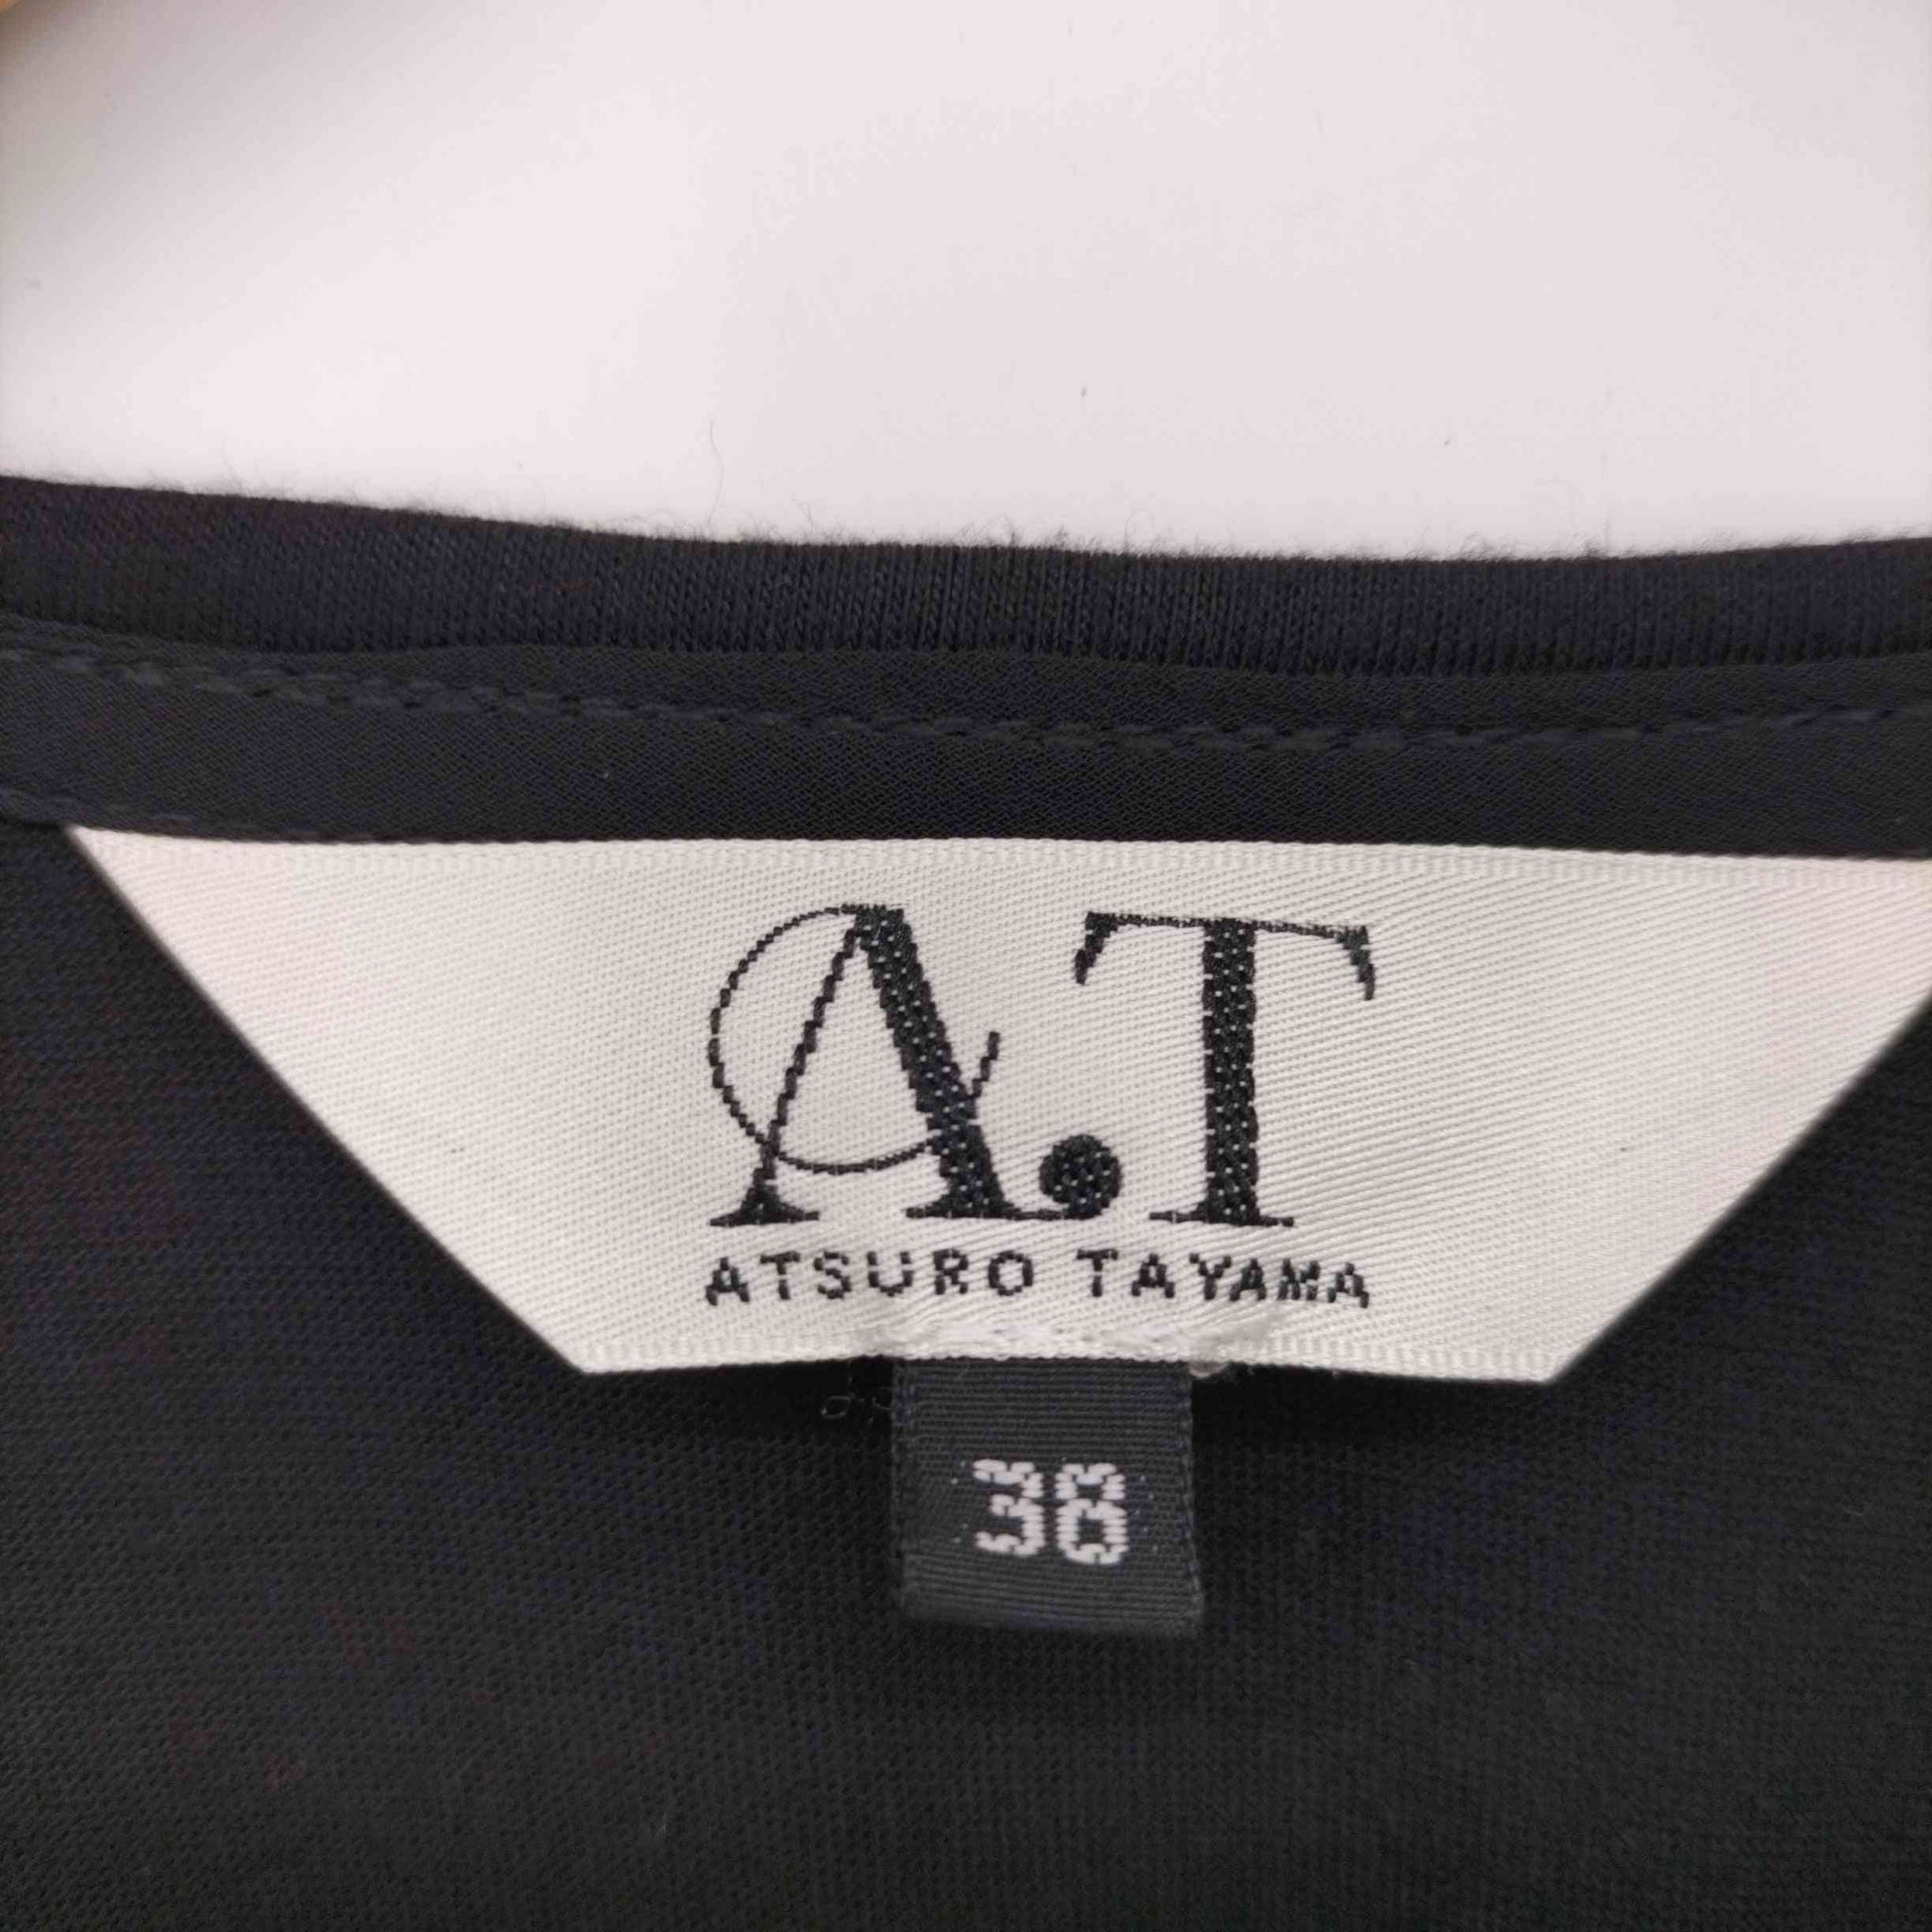 A.T ATSURO TAYAMA(エーティーアツロウタヤマ)ノースリーブレイヤードタンクトップ